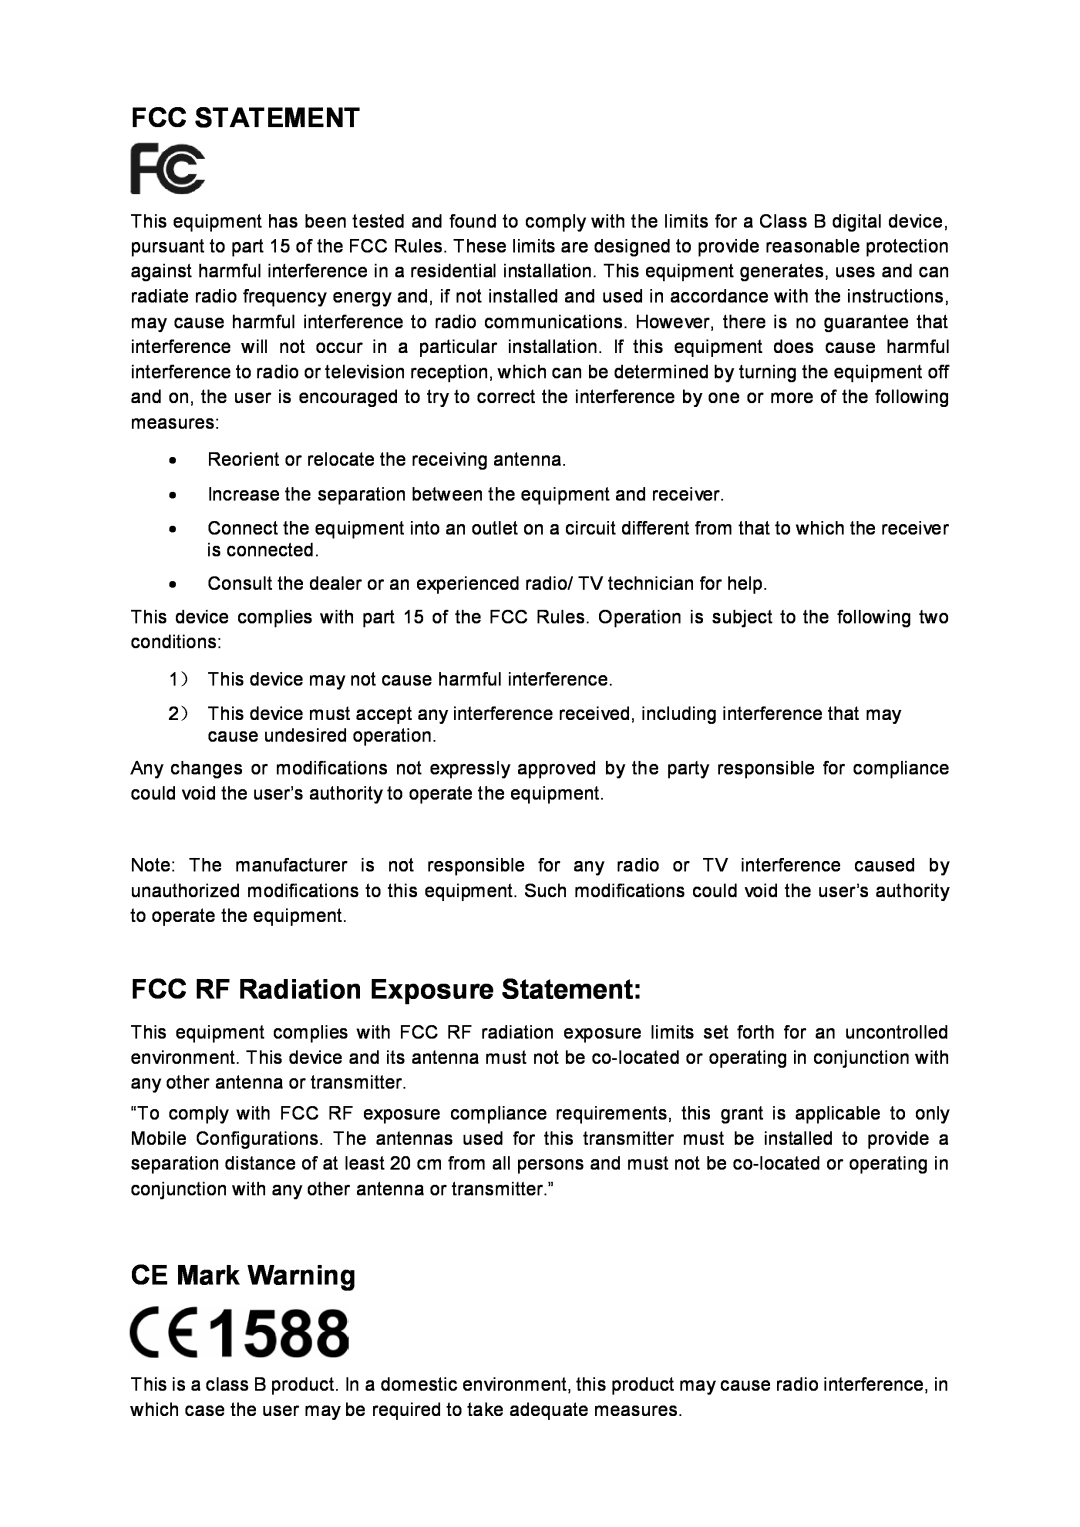 TP-Link TL-WA7210N manual Fcc Statement, FCC RF Radiation Exposure Statement, CE Mark Warning 